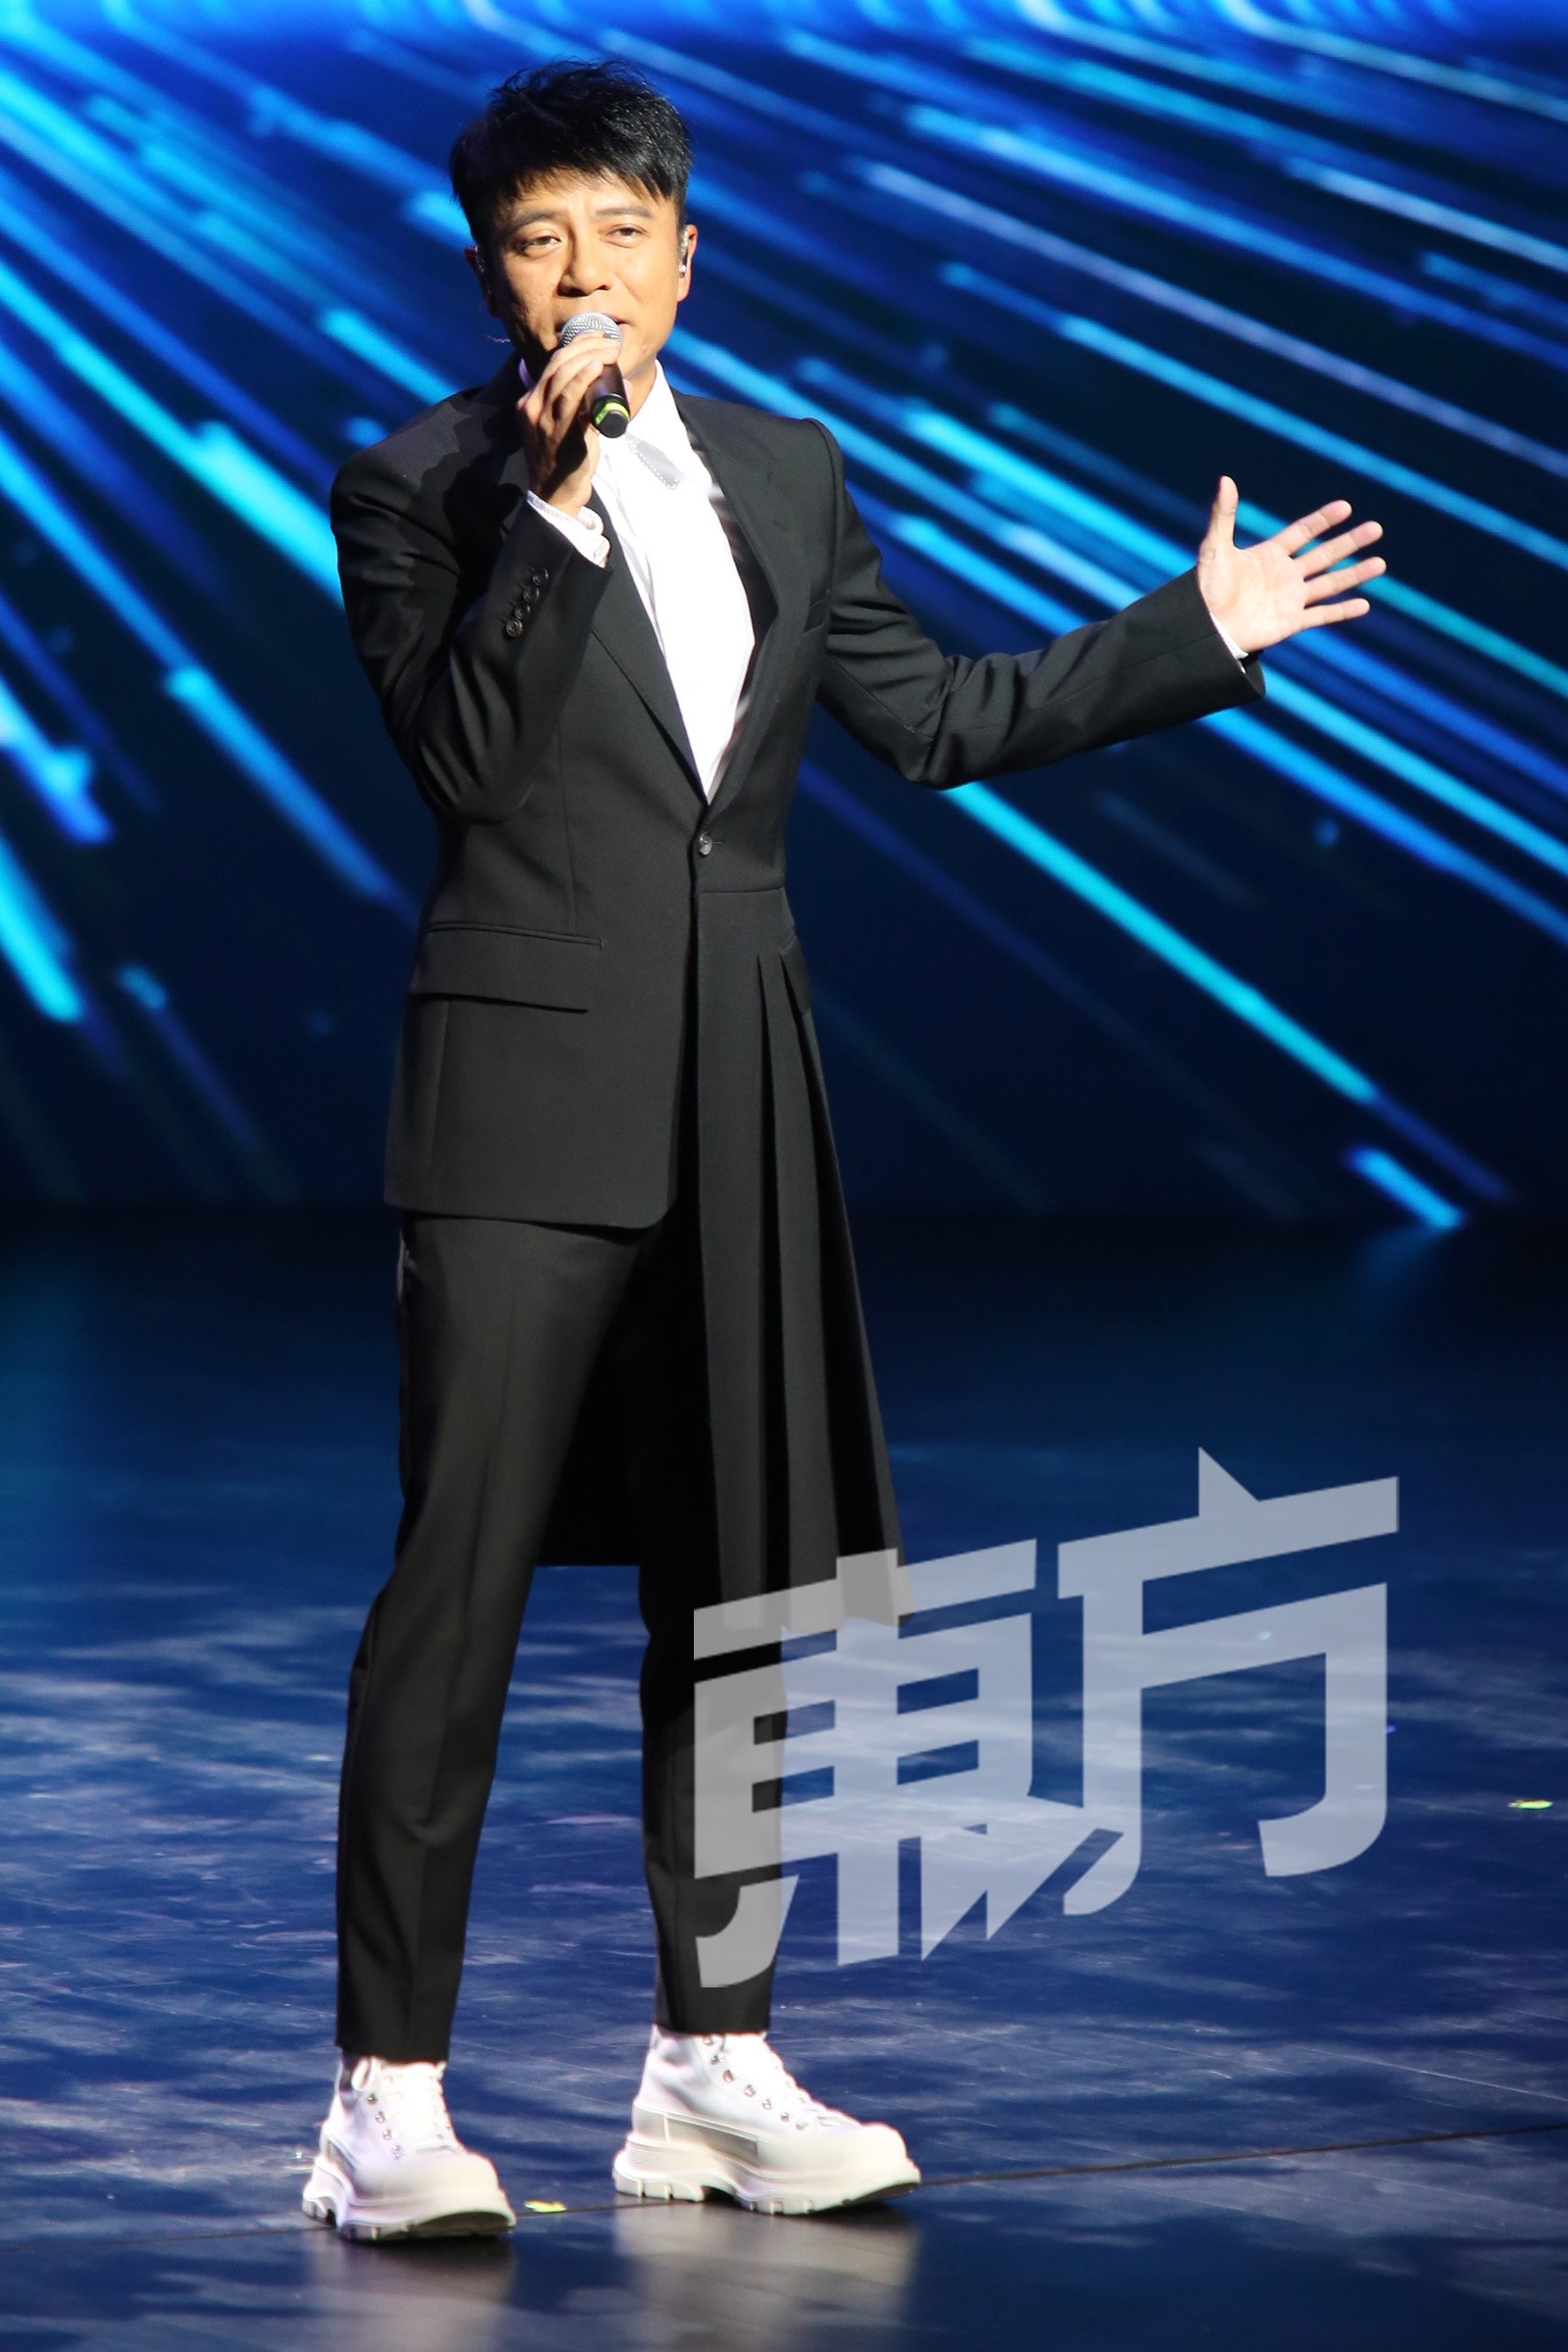 香港著名男歌手李克勤献唱《红日》和《月半小夜曲》，掀起一阵欢呼和呐喊声。